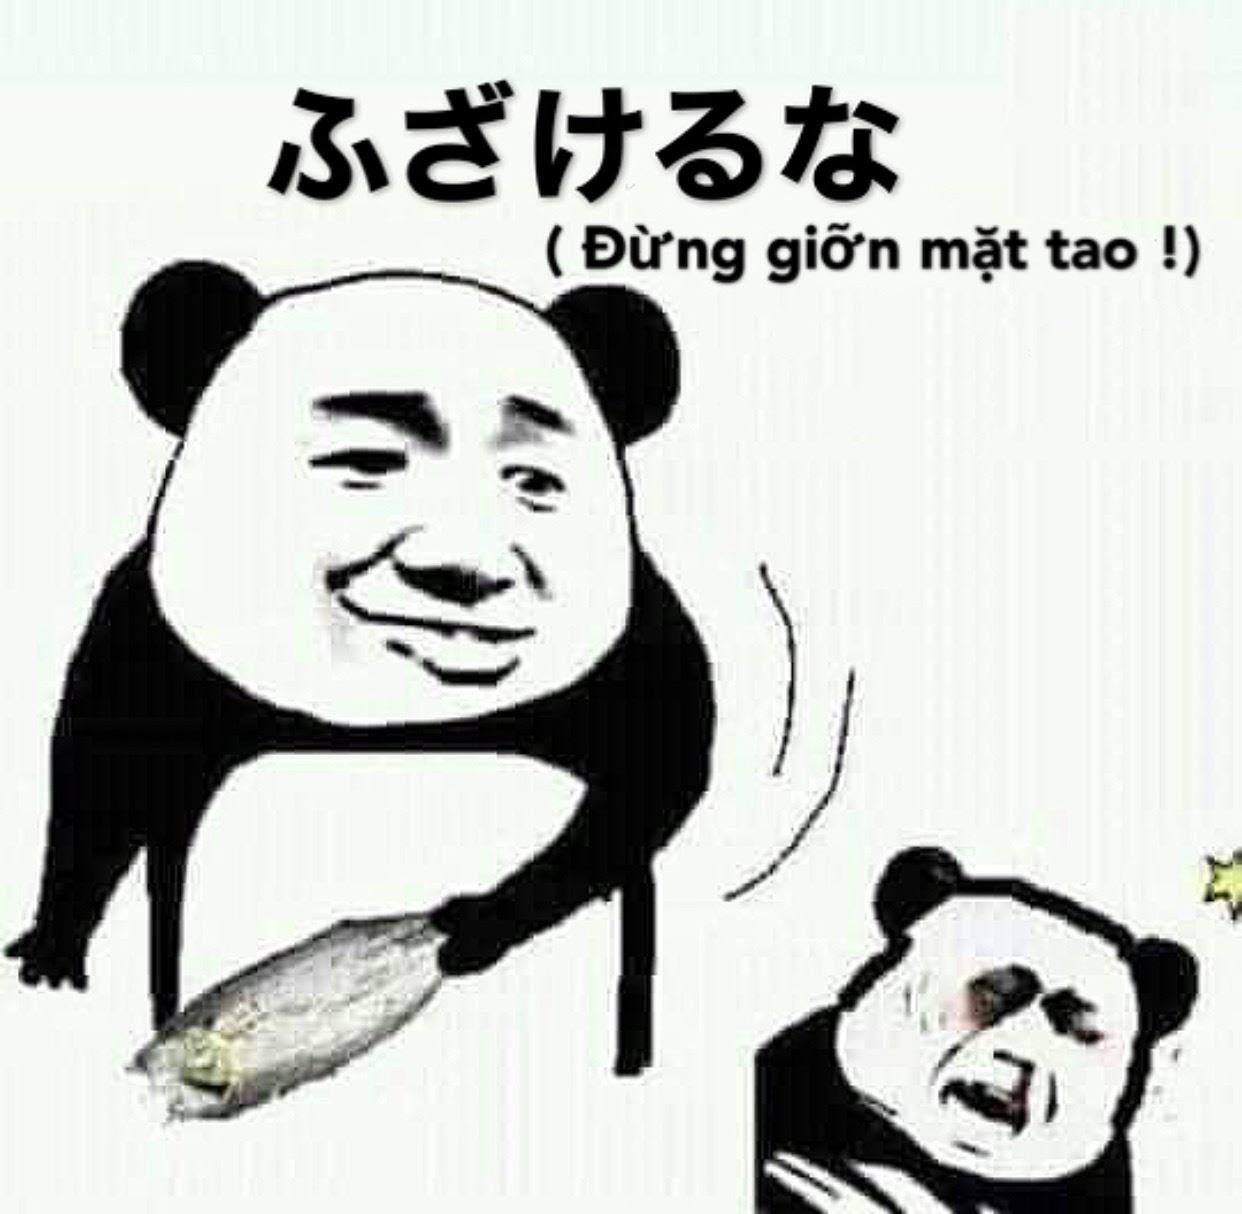 Meme chửi Trung Quốc